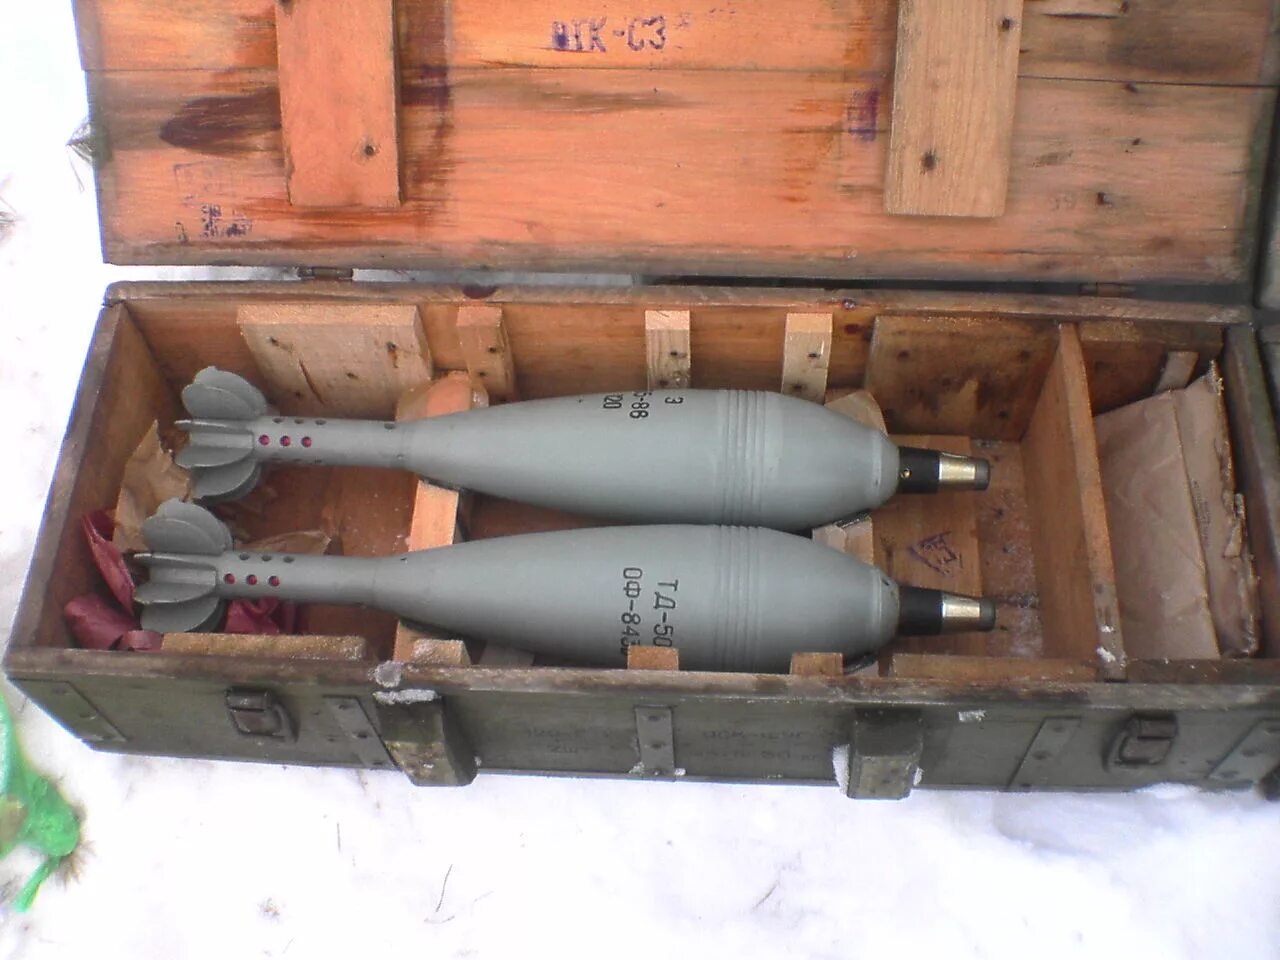 Б а 2 75 12. Калибр 122 мм снаряд. Ящик для взрывателей 120 мм миномета. 120 Мм мины в ящике. Укупорка 120 мм мин.